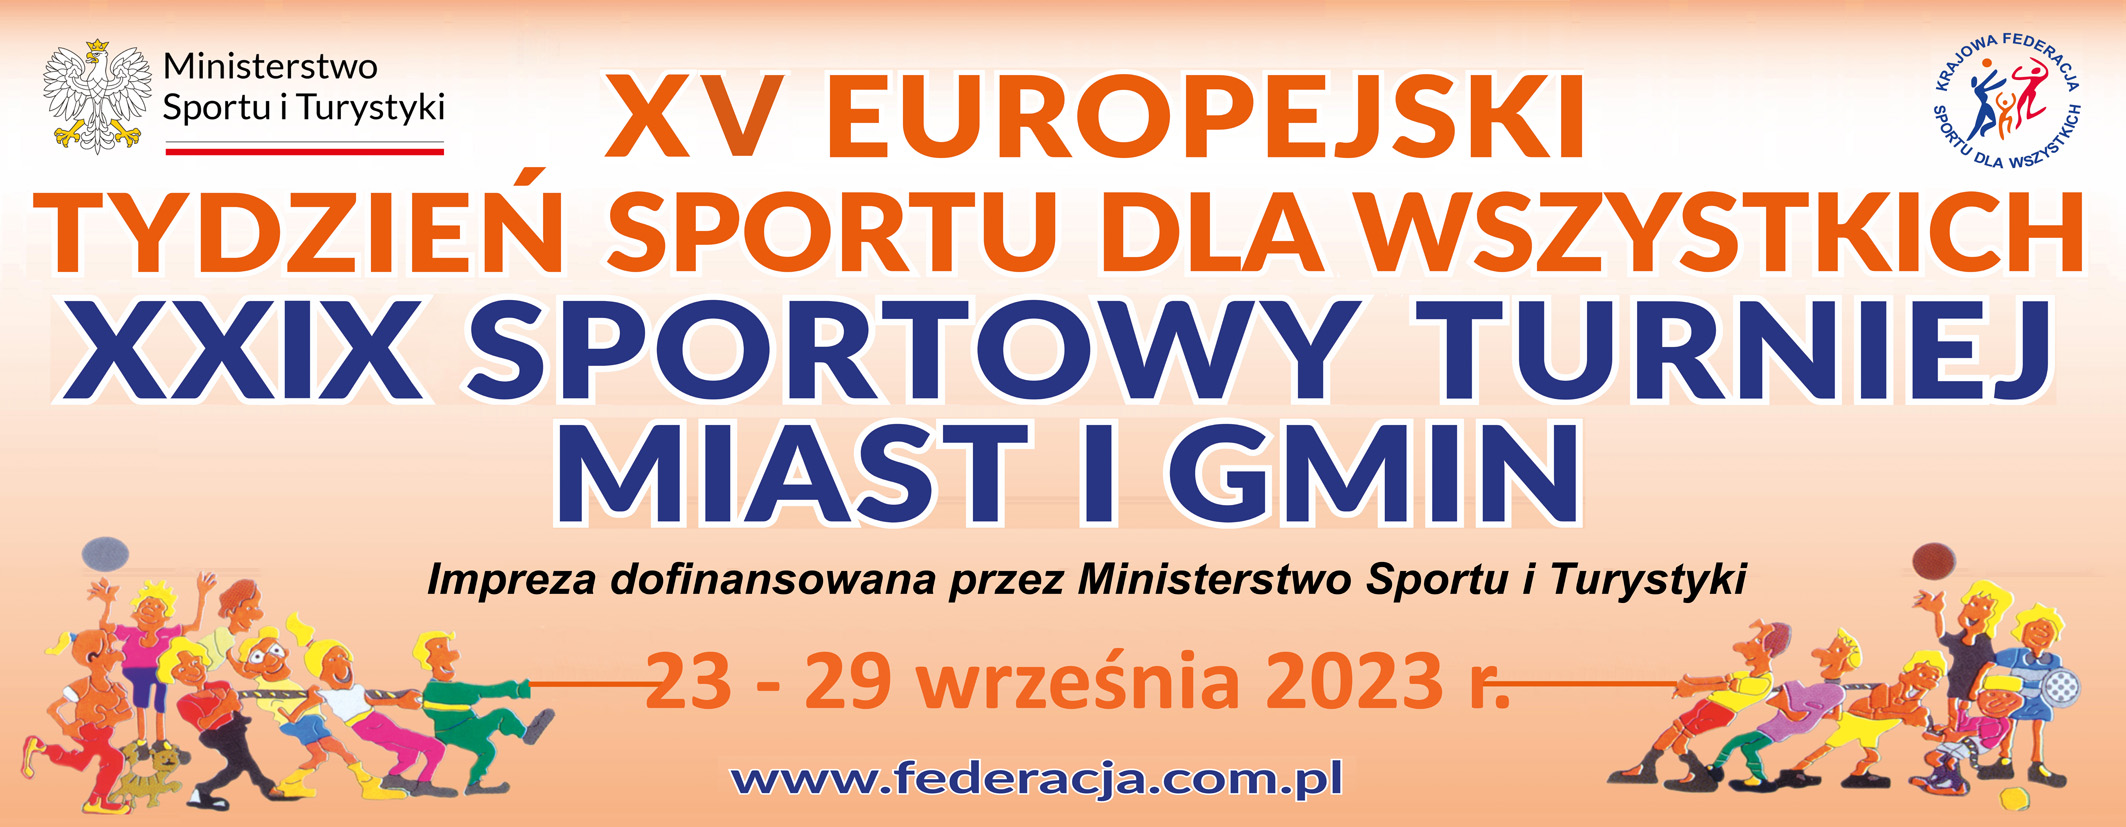 Na plakacie widnieje napis: XV Europejski Tydzień Sportu dla Wszystich. XXIX Sportowy Turniej Miast i Gmin 23-29 września 2023 r.